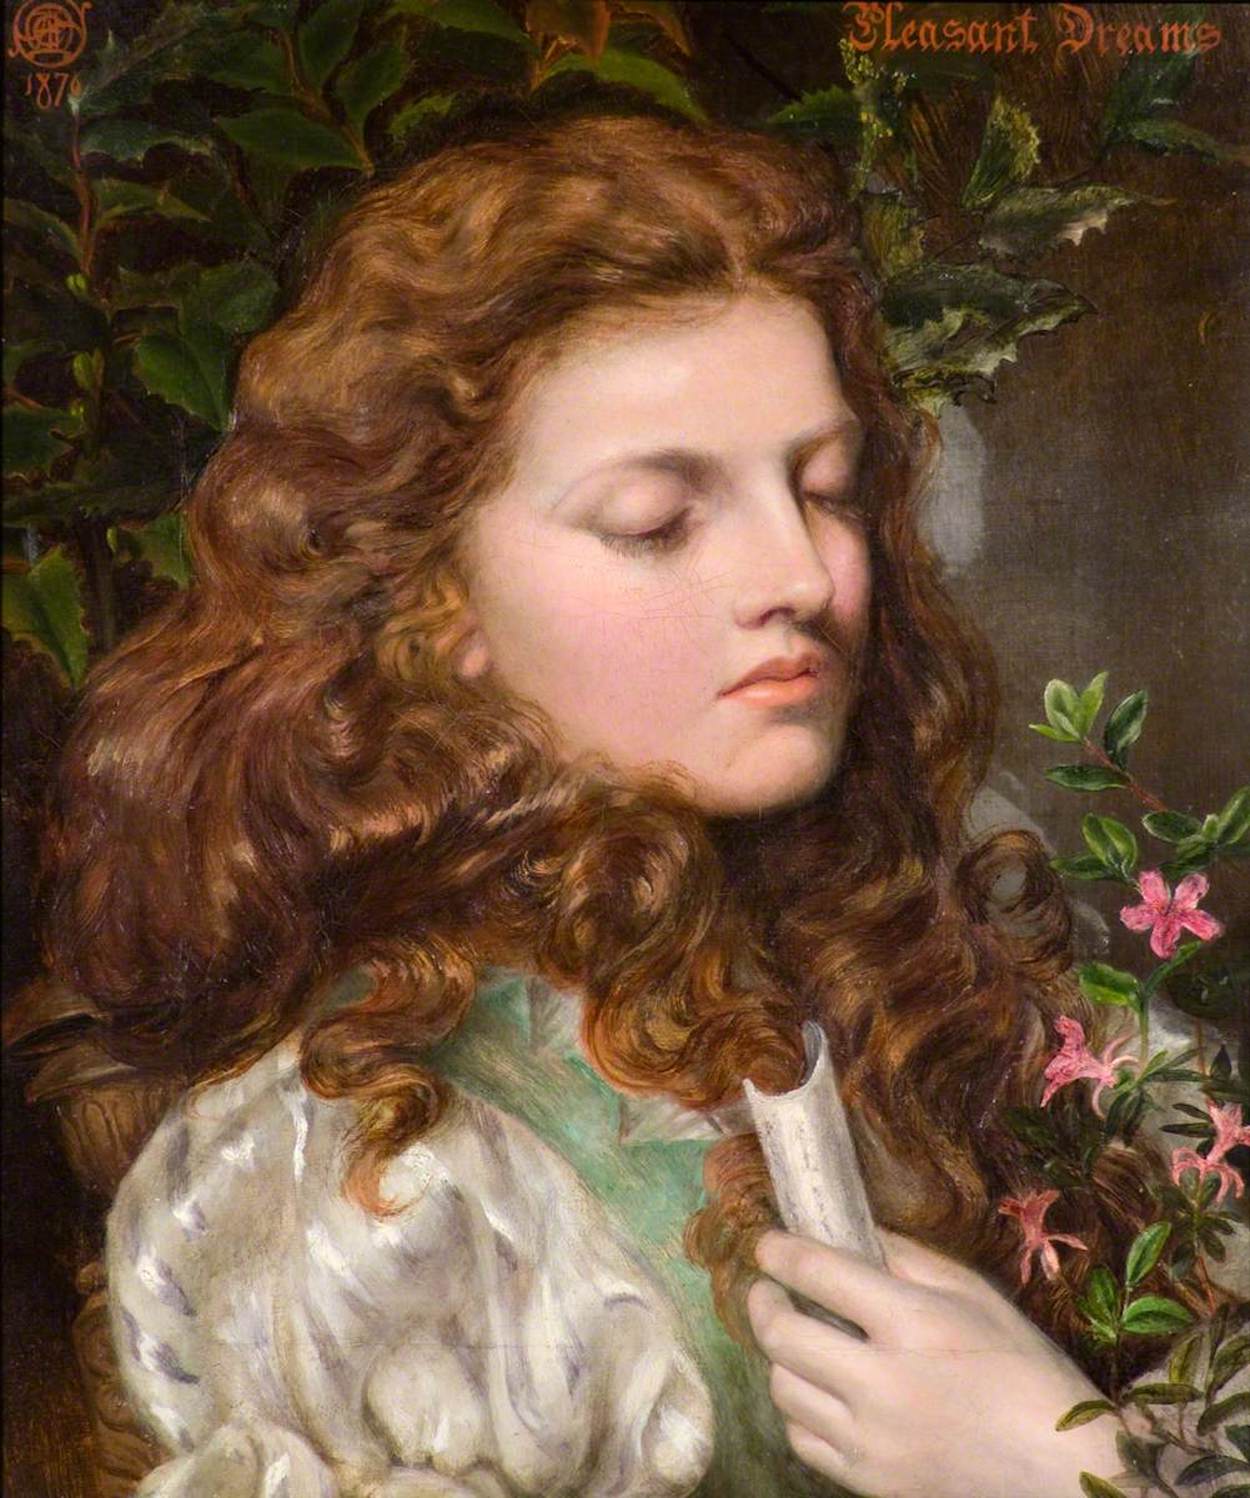 즐거운 꿈(Pleasant Dreams) by Emma Sandys - 1876 - 44 cm x 32 cm 